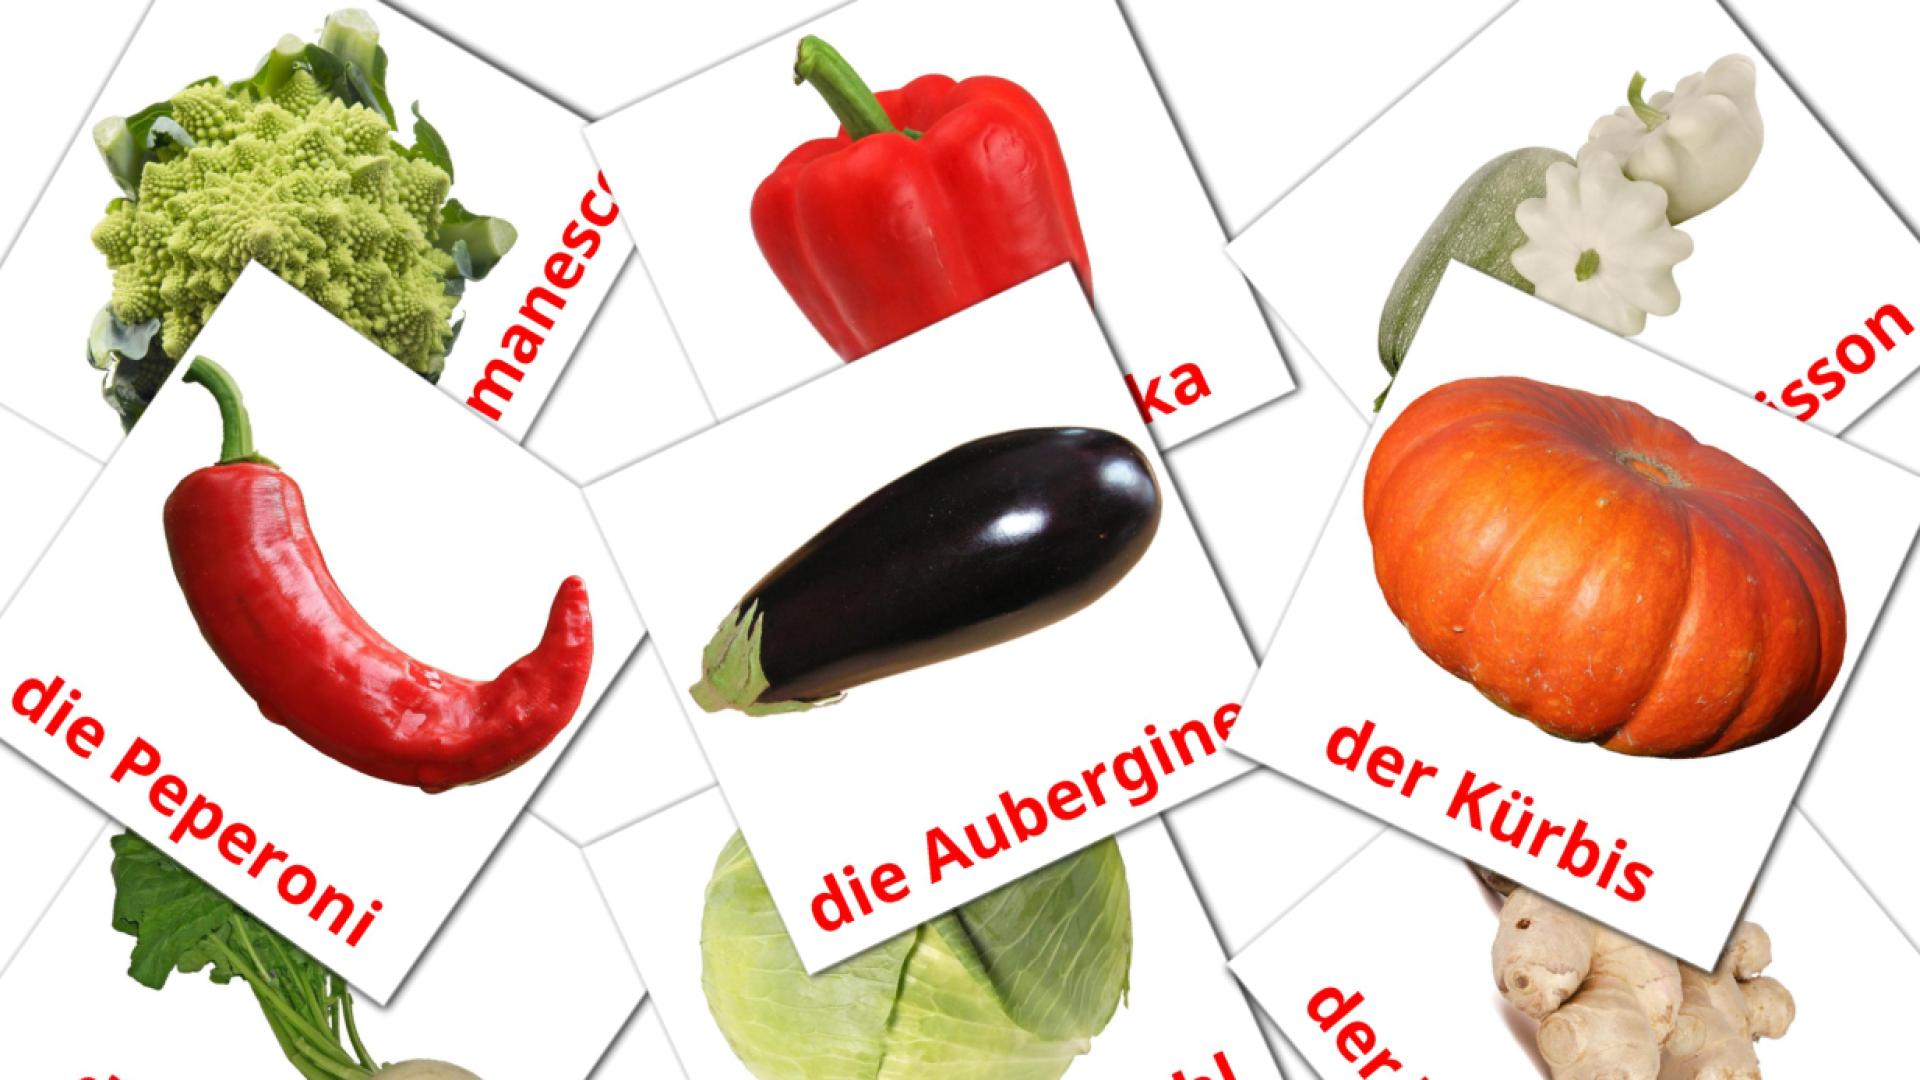 Les Légumes - cartes de vocabulaire allemand